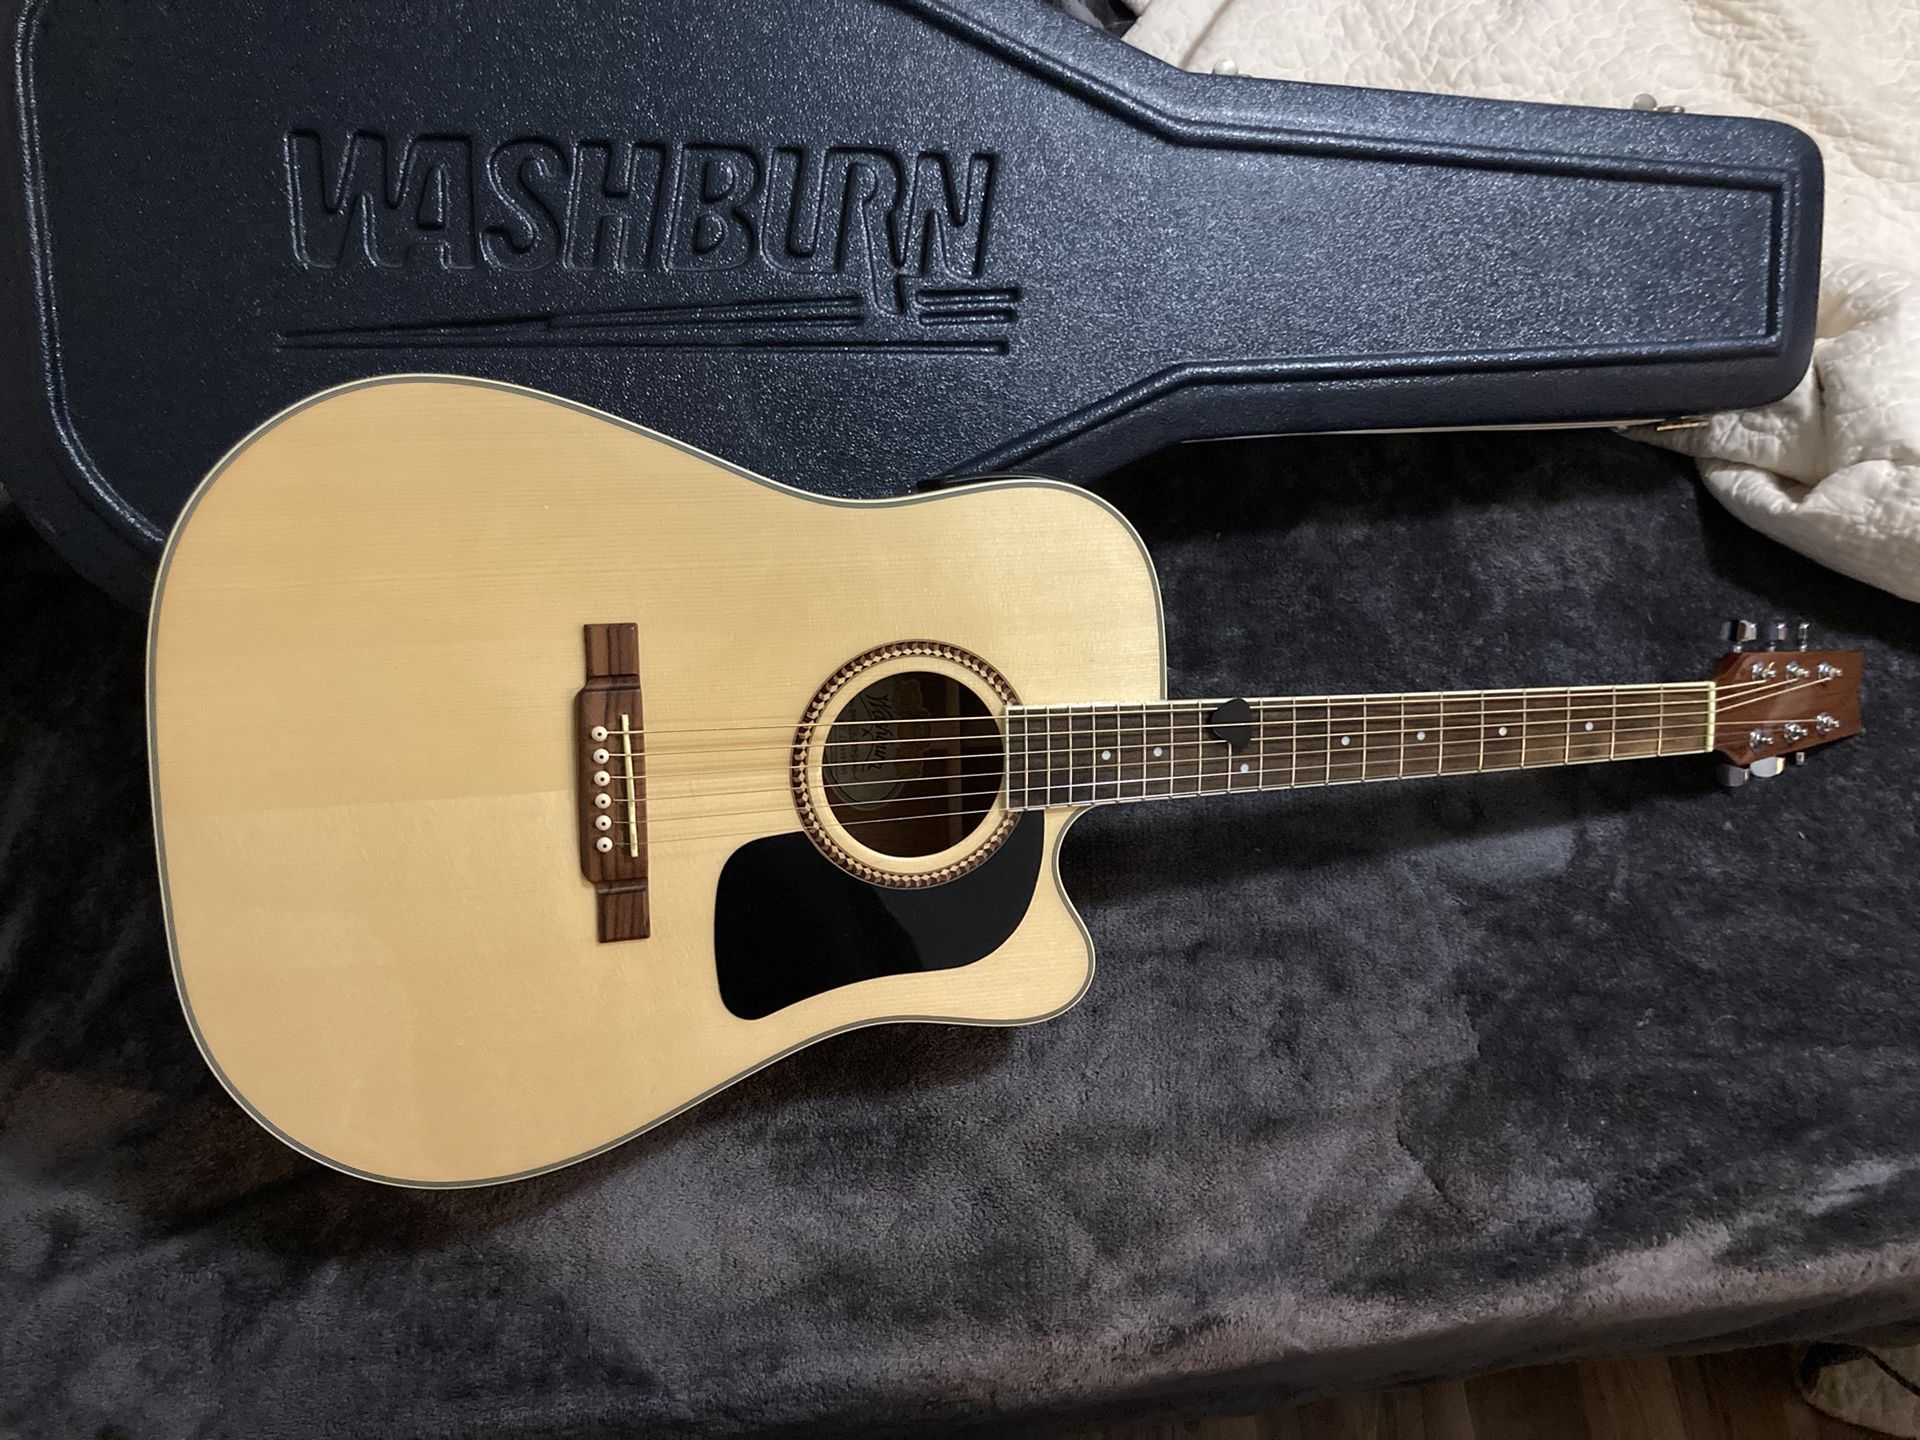 Washburn Guitar And Hard Case